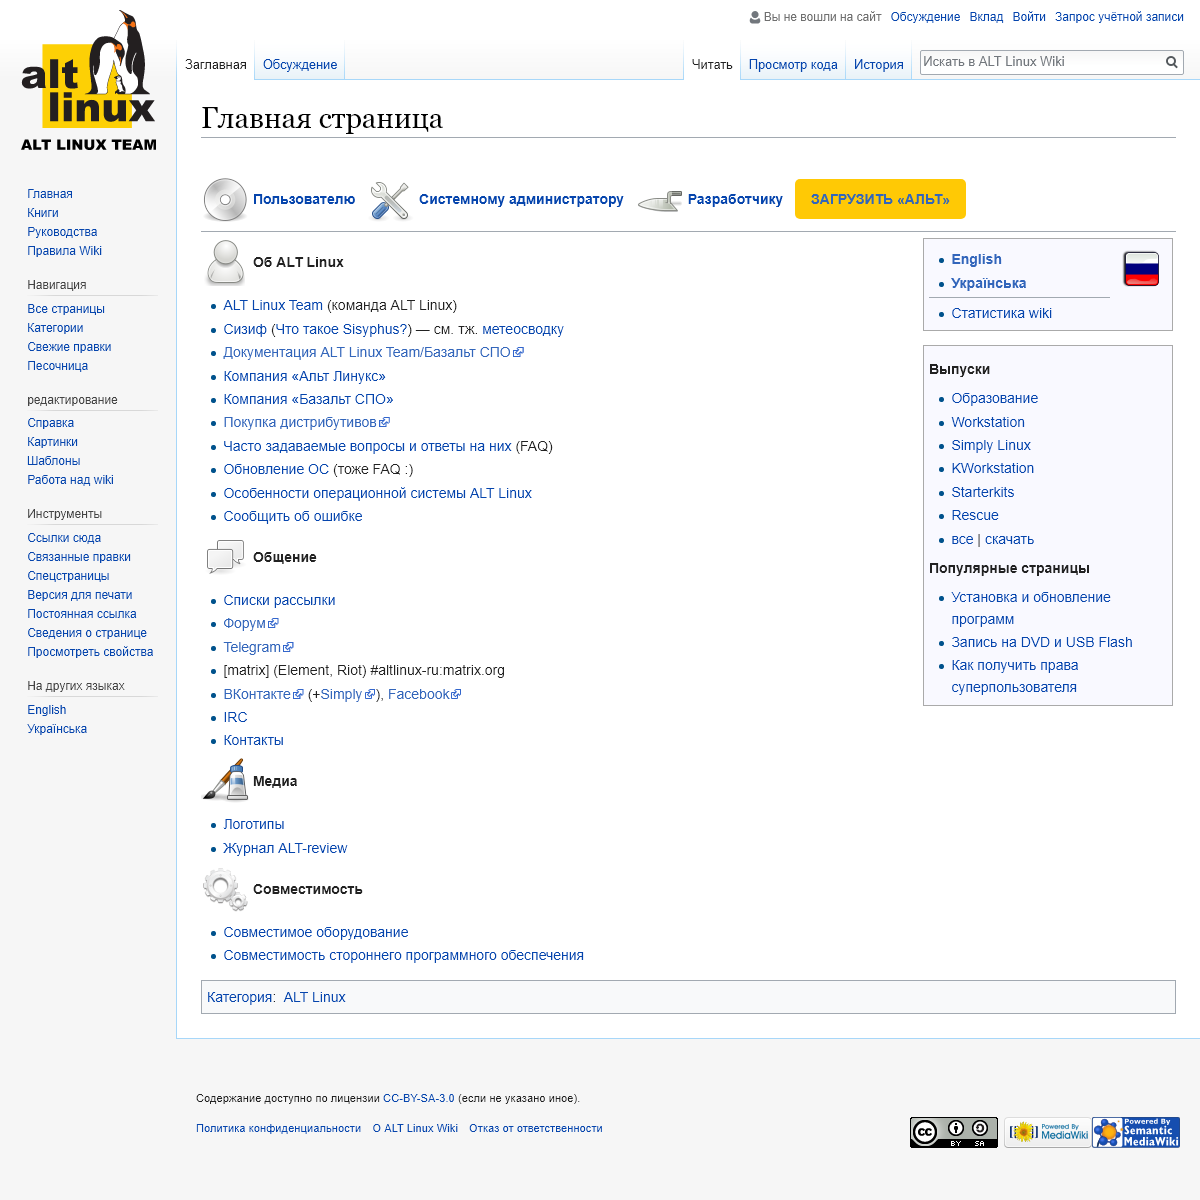 A complete backup of altlinux.ru